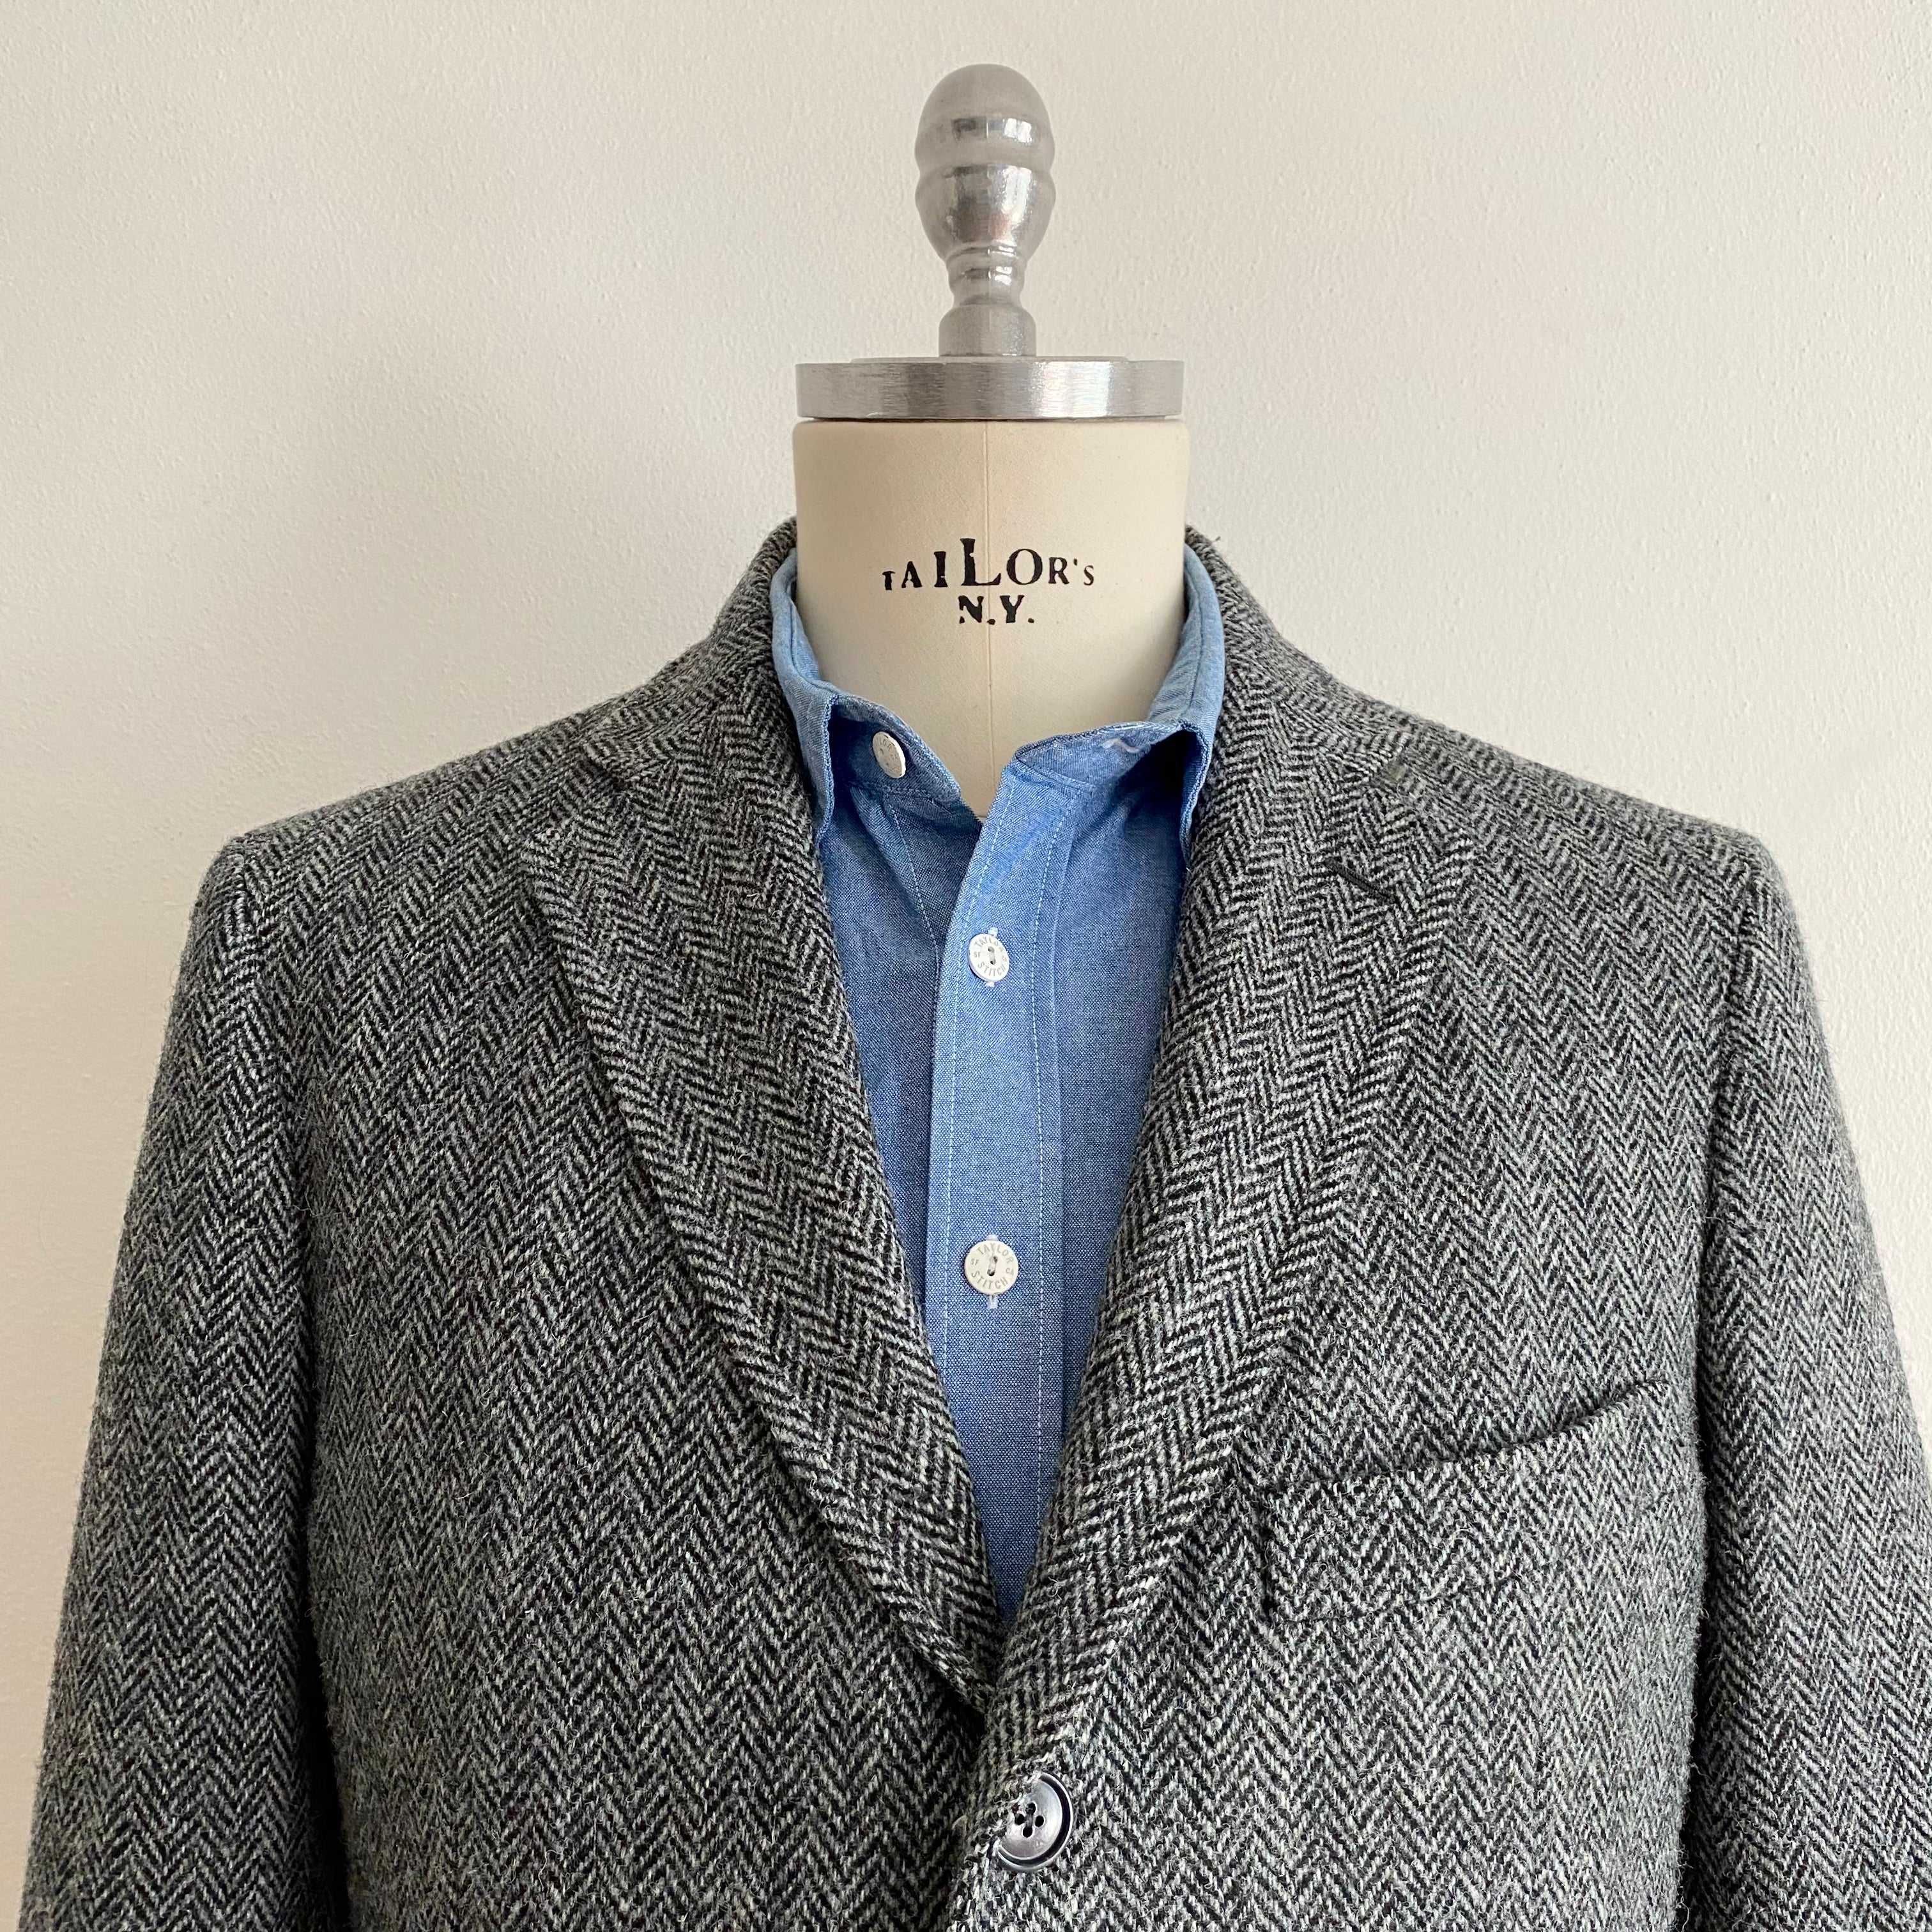 Grey Herringbone Tweed Tailored Jacket  - M/48R